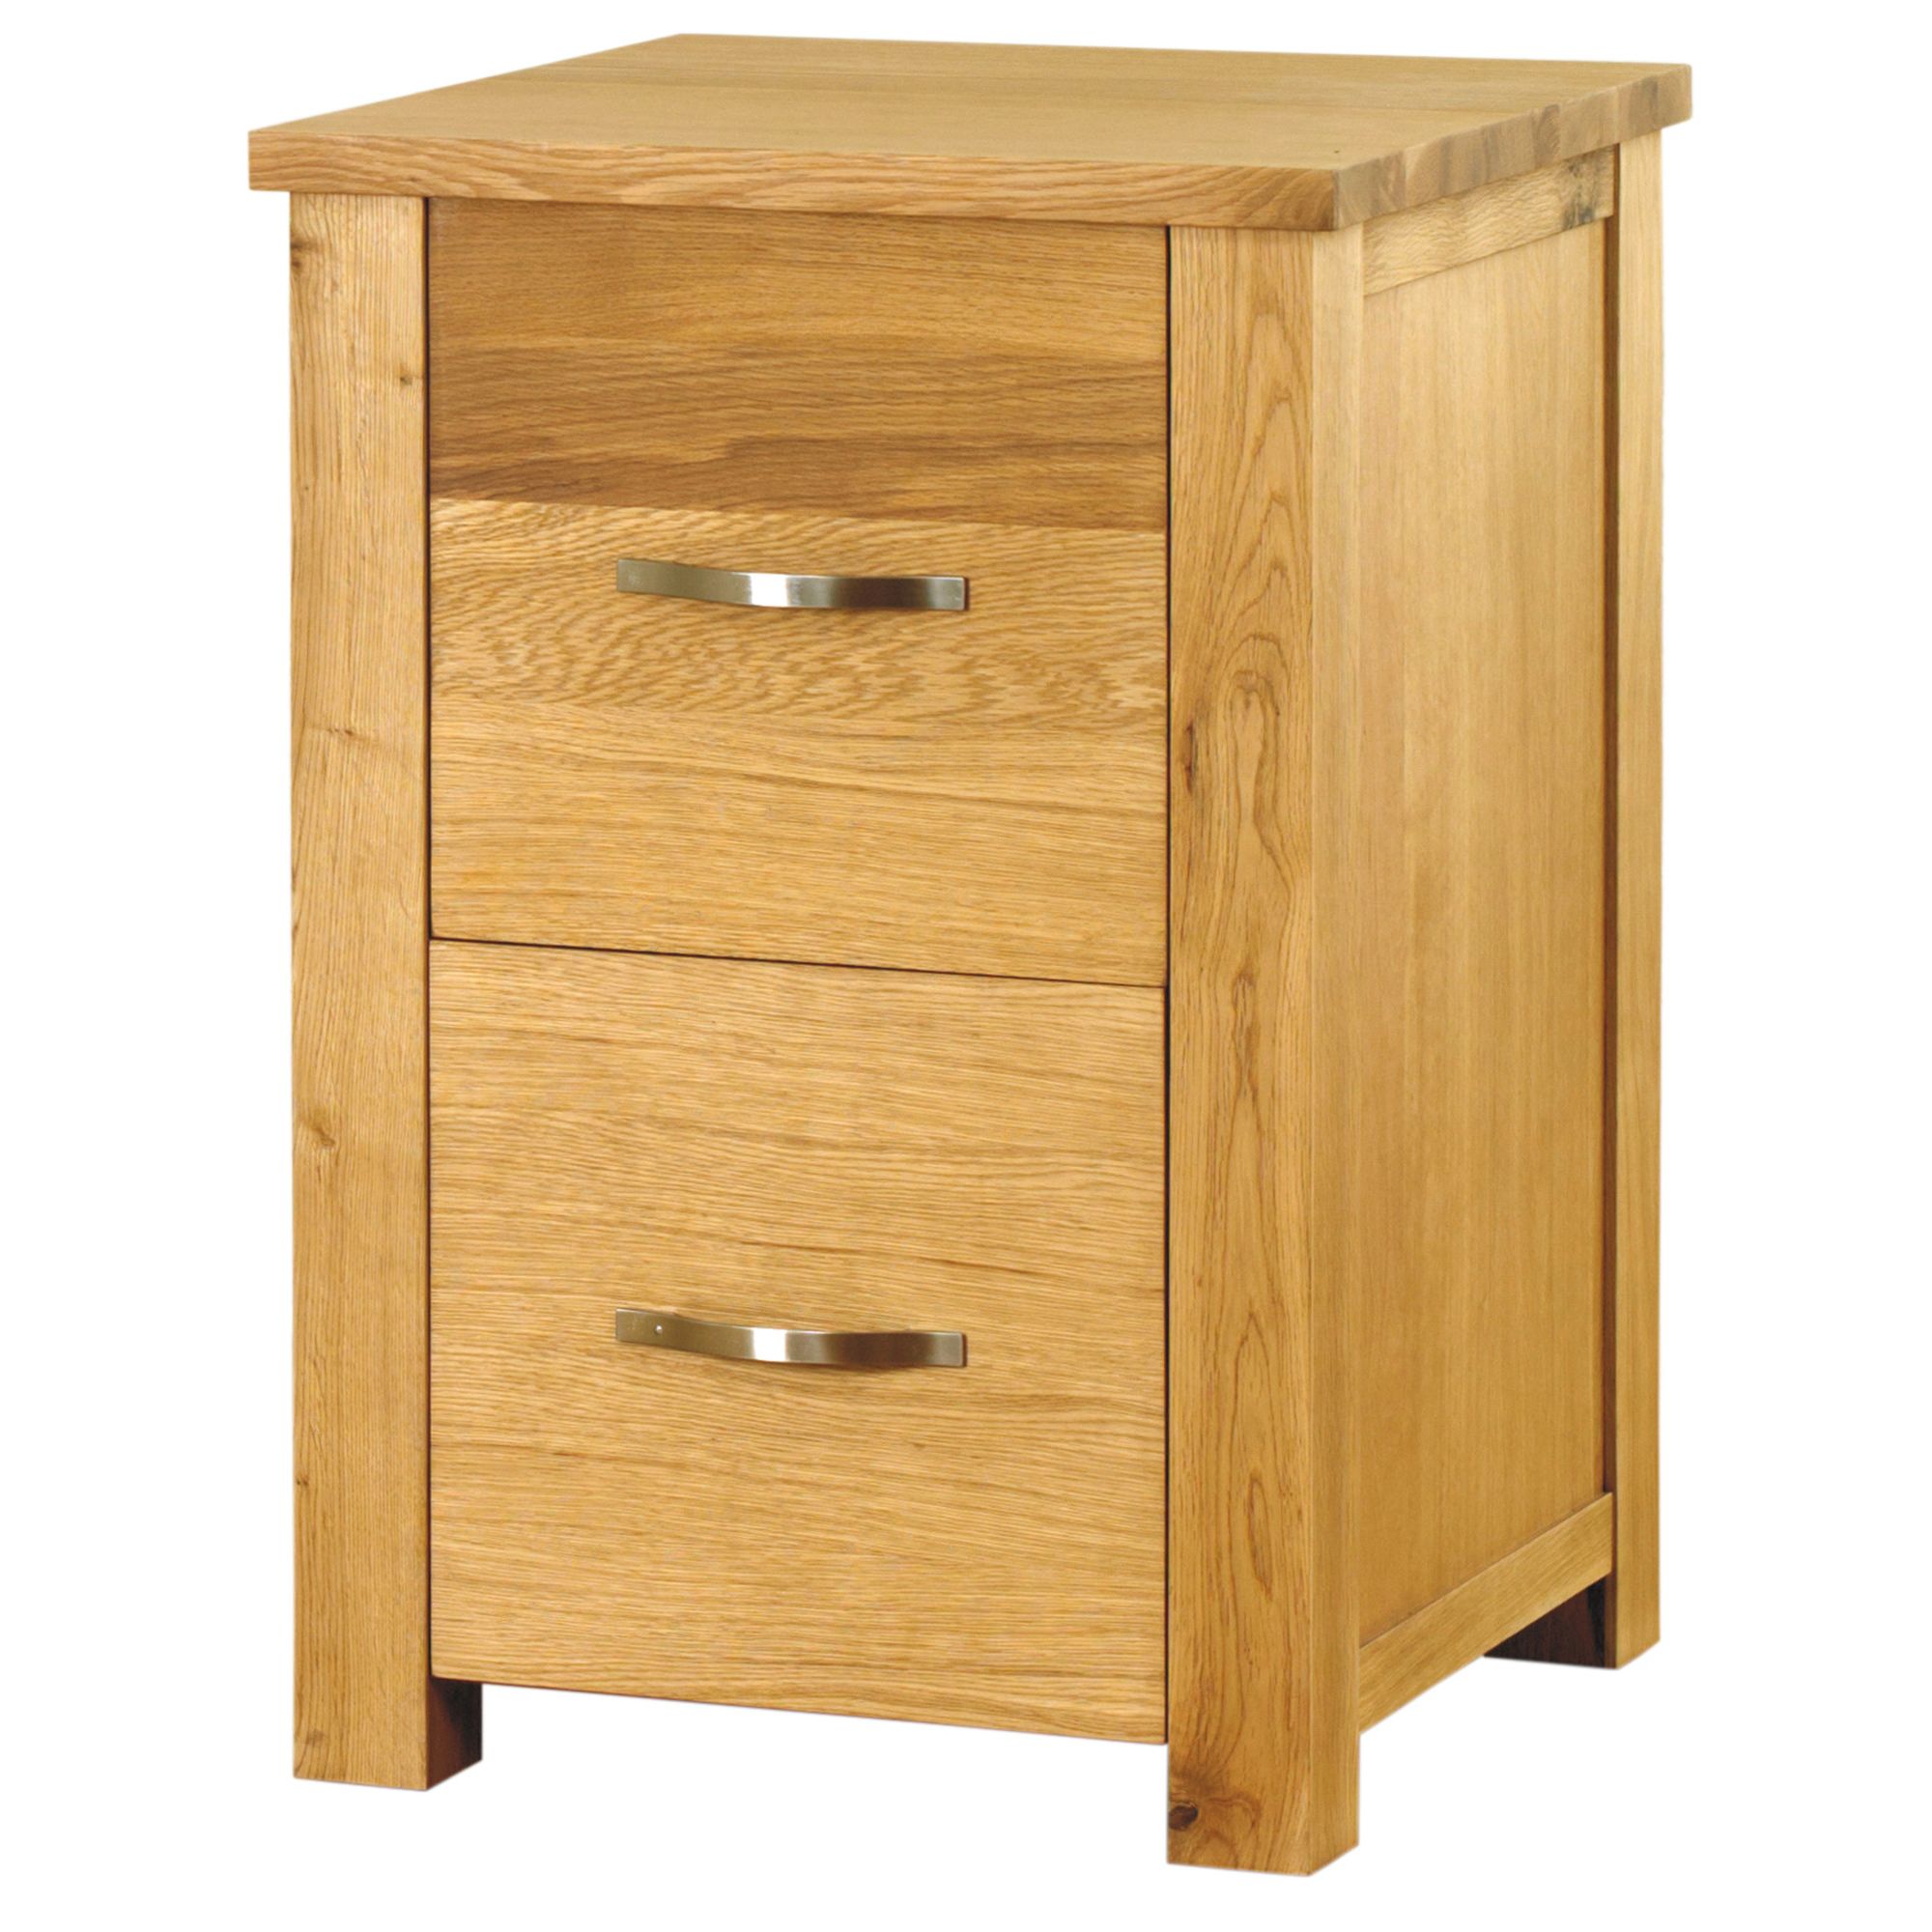 Baumhaus Aston Oak Two Drawer Filing Cabinet at Tesco Direct